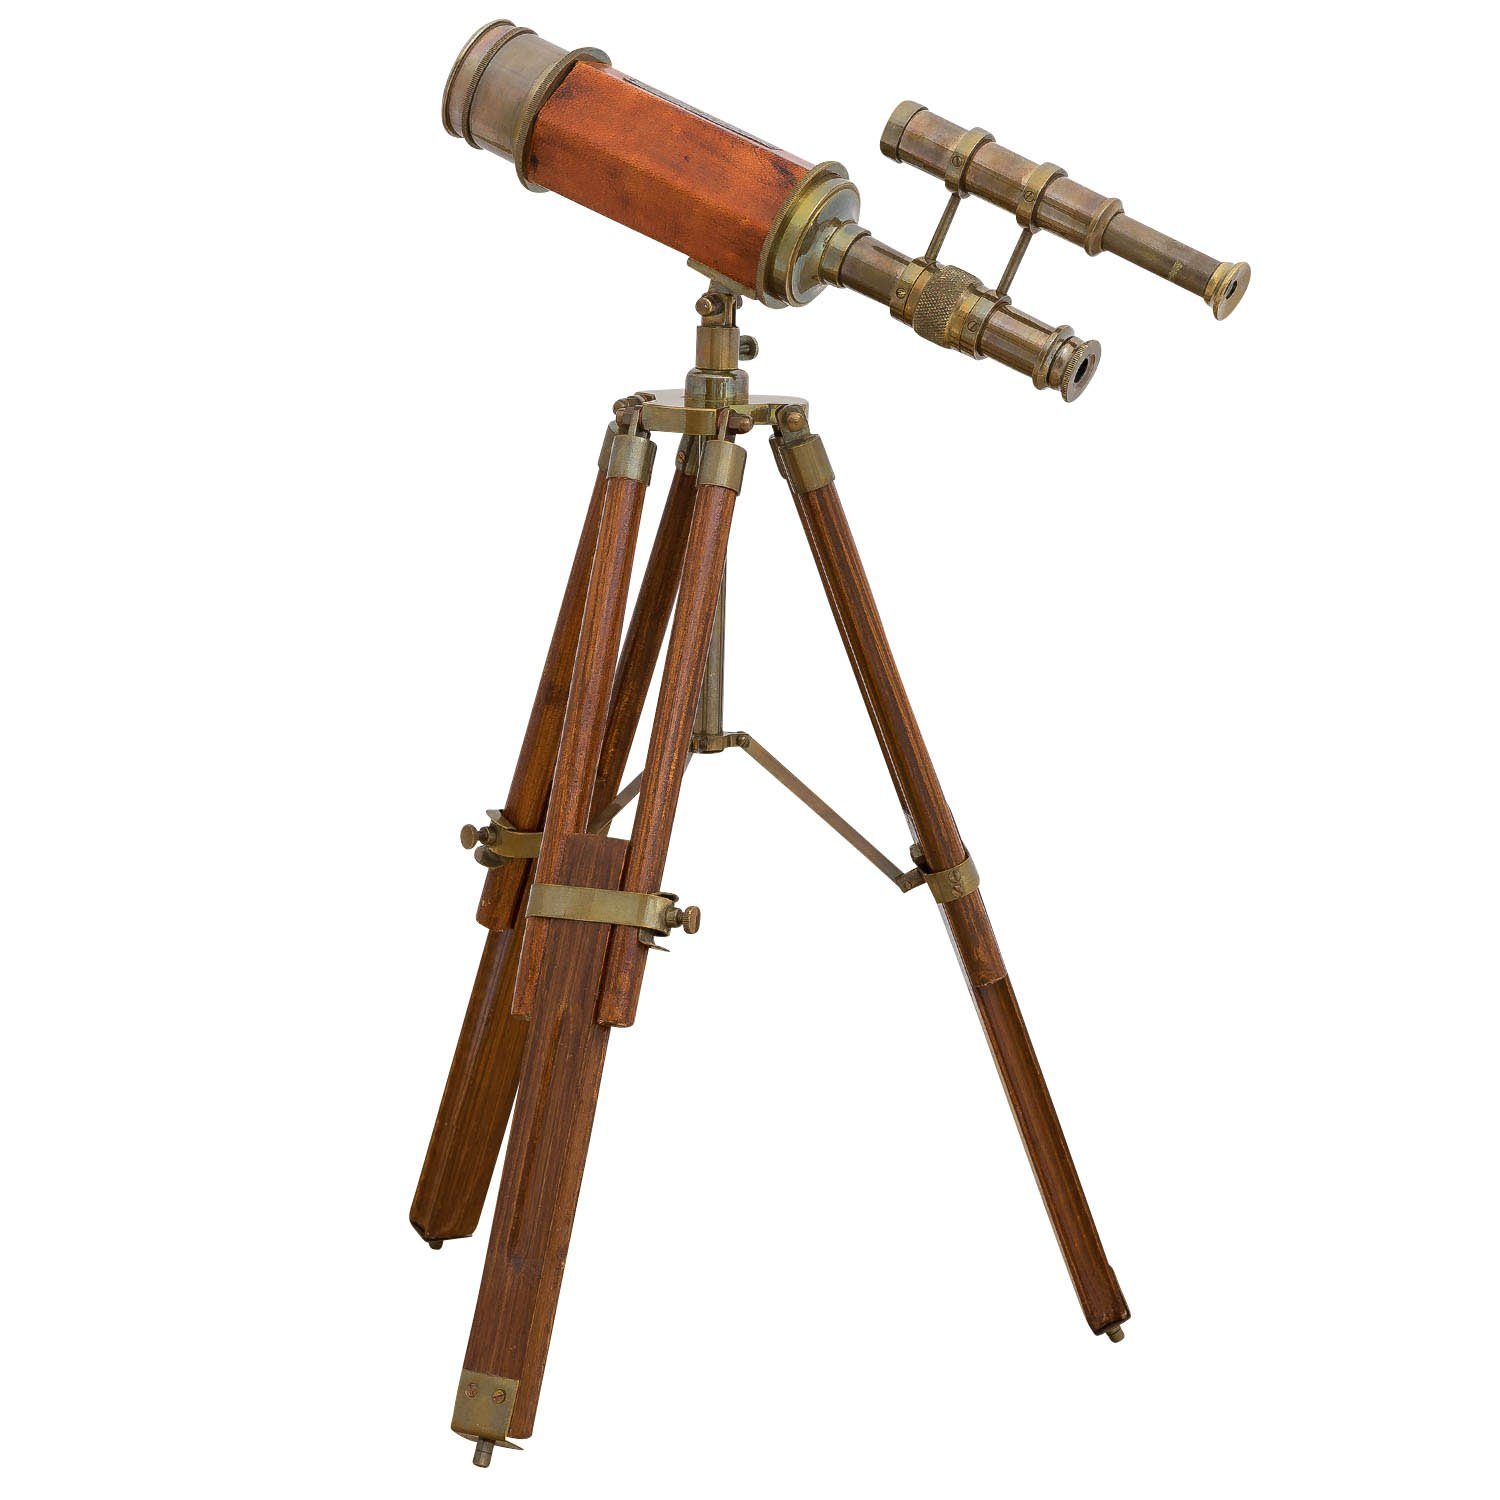 Aubaho Teleskop Doppel-Teleskop mit Holz-Stativ Fernglas Antik-Stil Fernrohr Messing